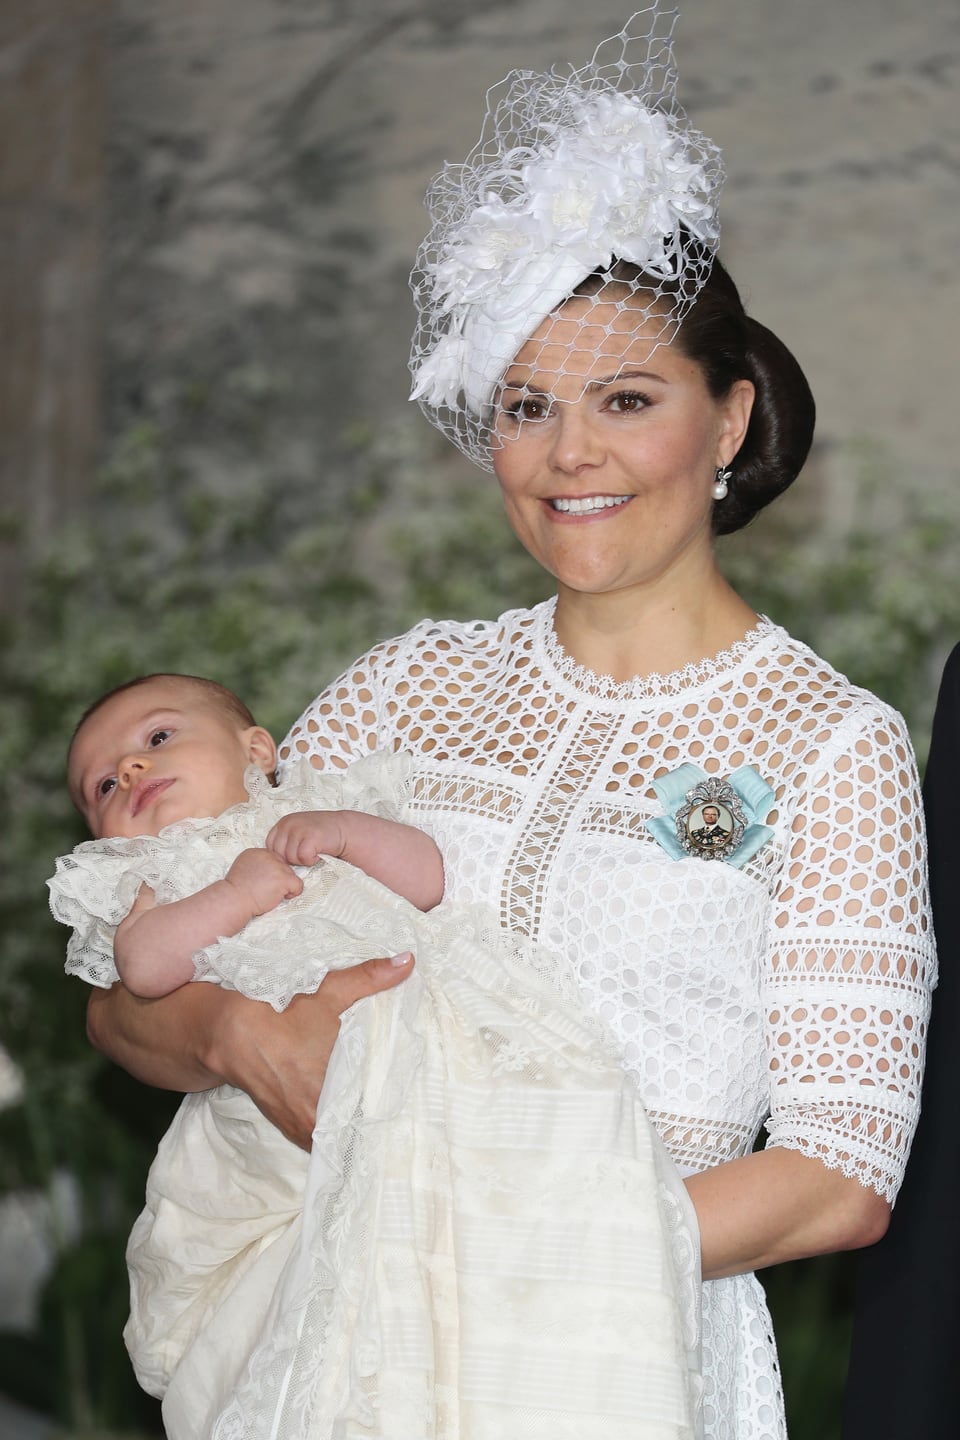 Victoria mit Baby Oscar auf dem Arm, beide festlich gekleidet